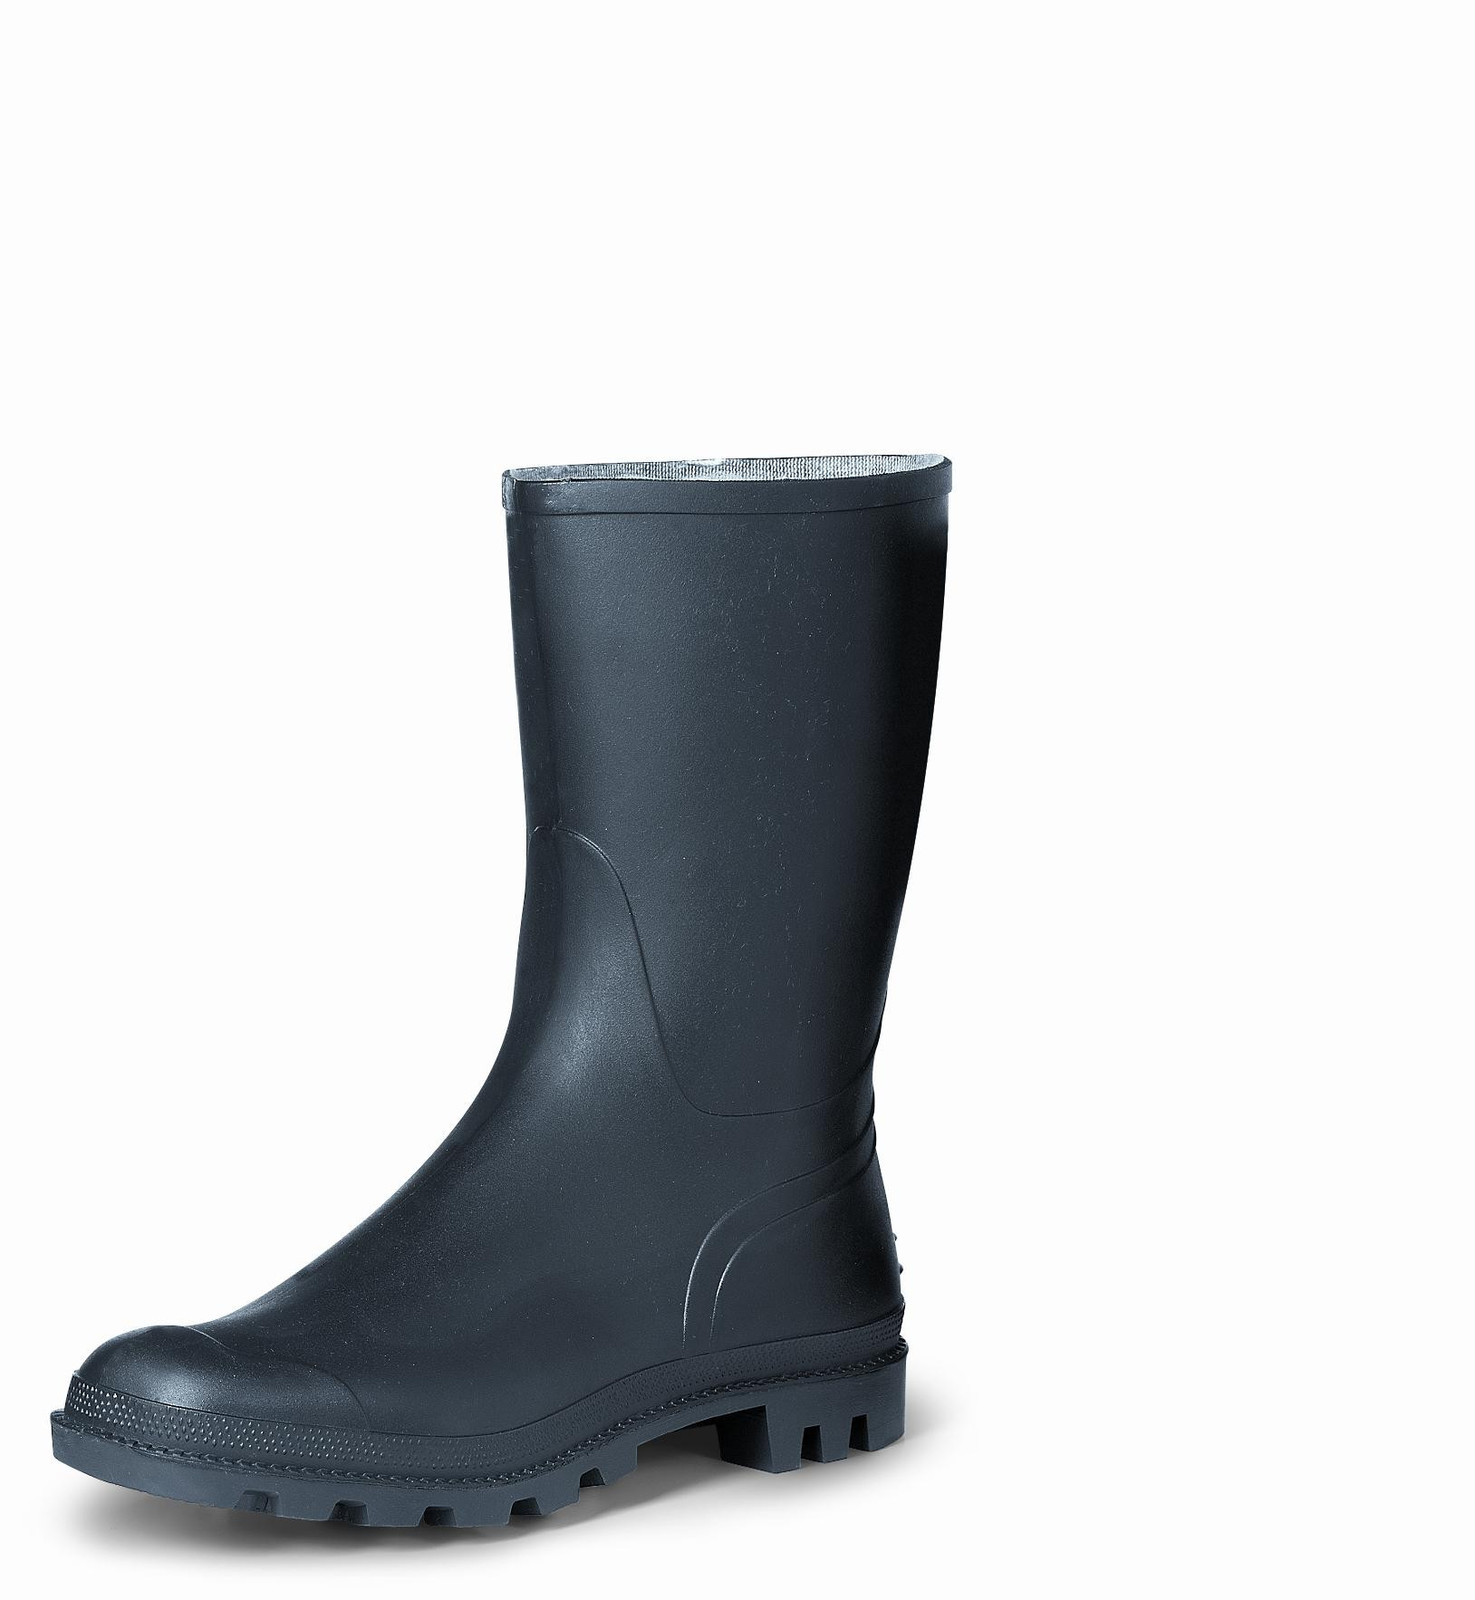 Gumáky Boots Troncheto PVC nízke - veľkosť: 41, farba: čierna